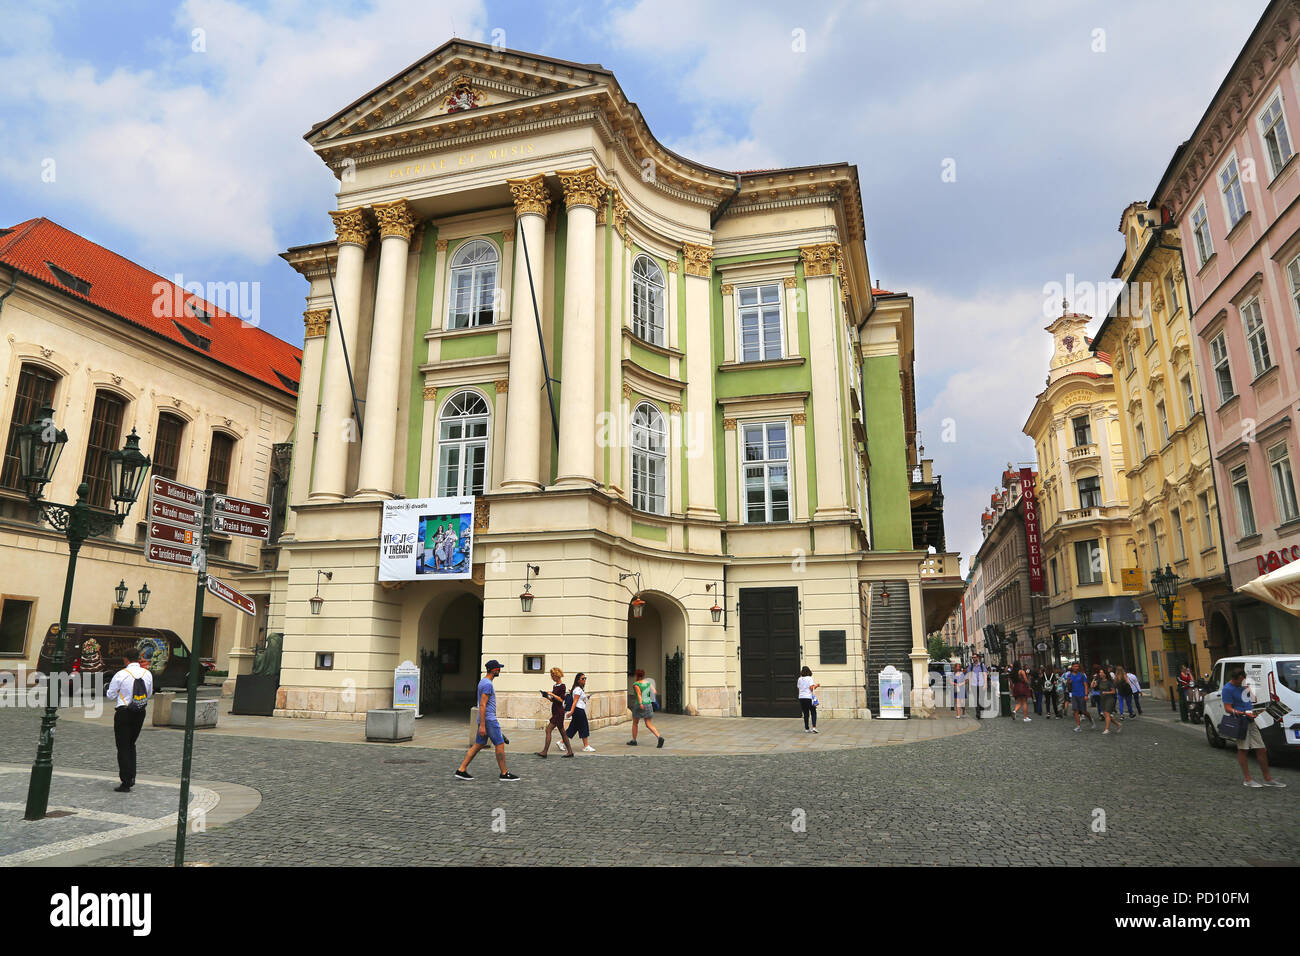 Jun 11, 2018 Prag, Tschechische Republik: Blick auf den Fincas Theater in Prag, Tschechische Republik Stockfoto